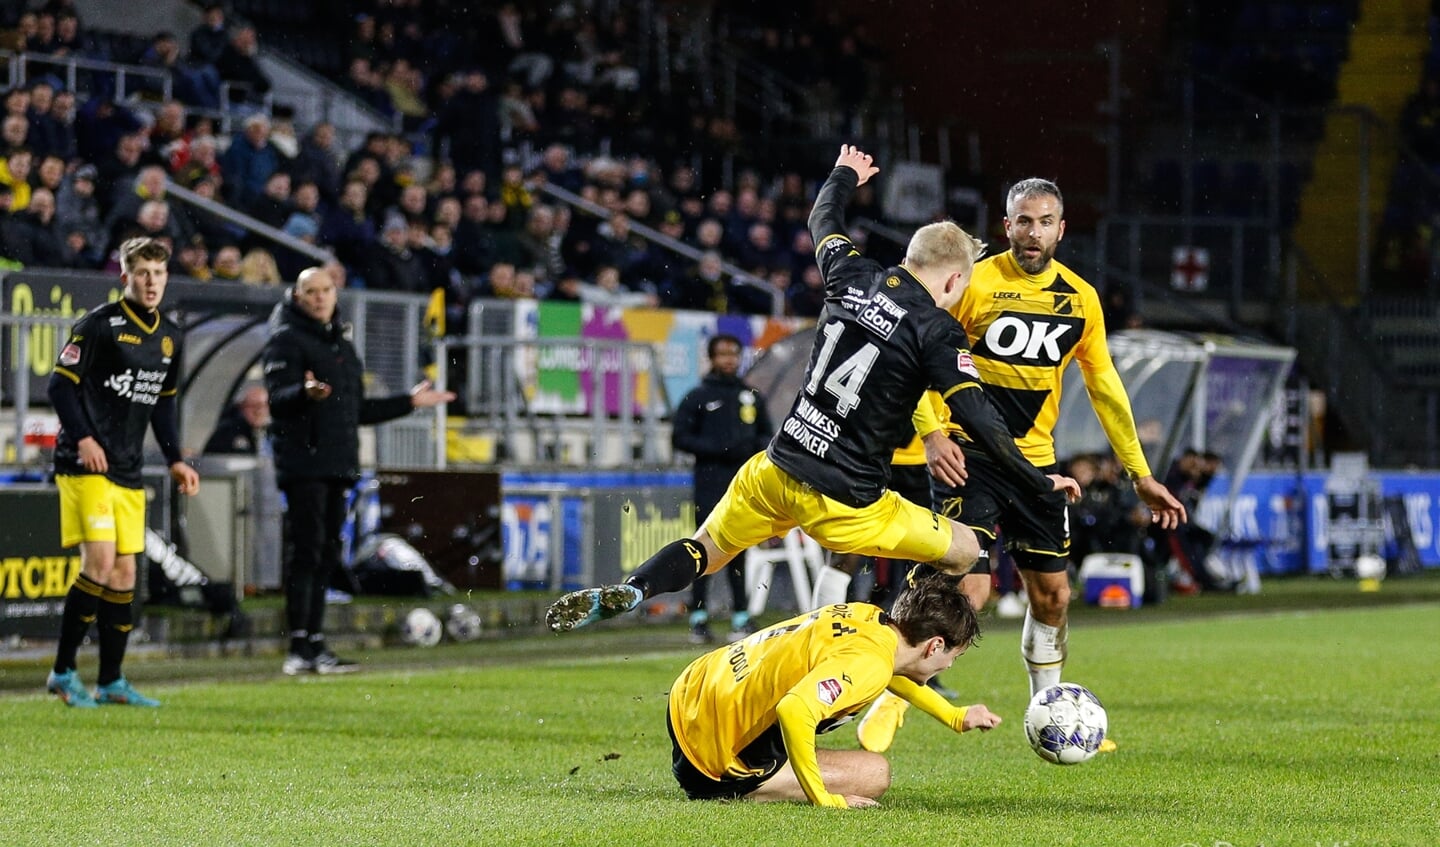 De wedstrijd tussen NAC en Roda JC eindigt in 2-2. 